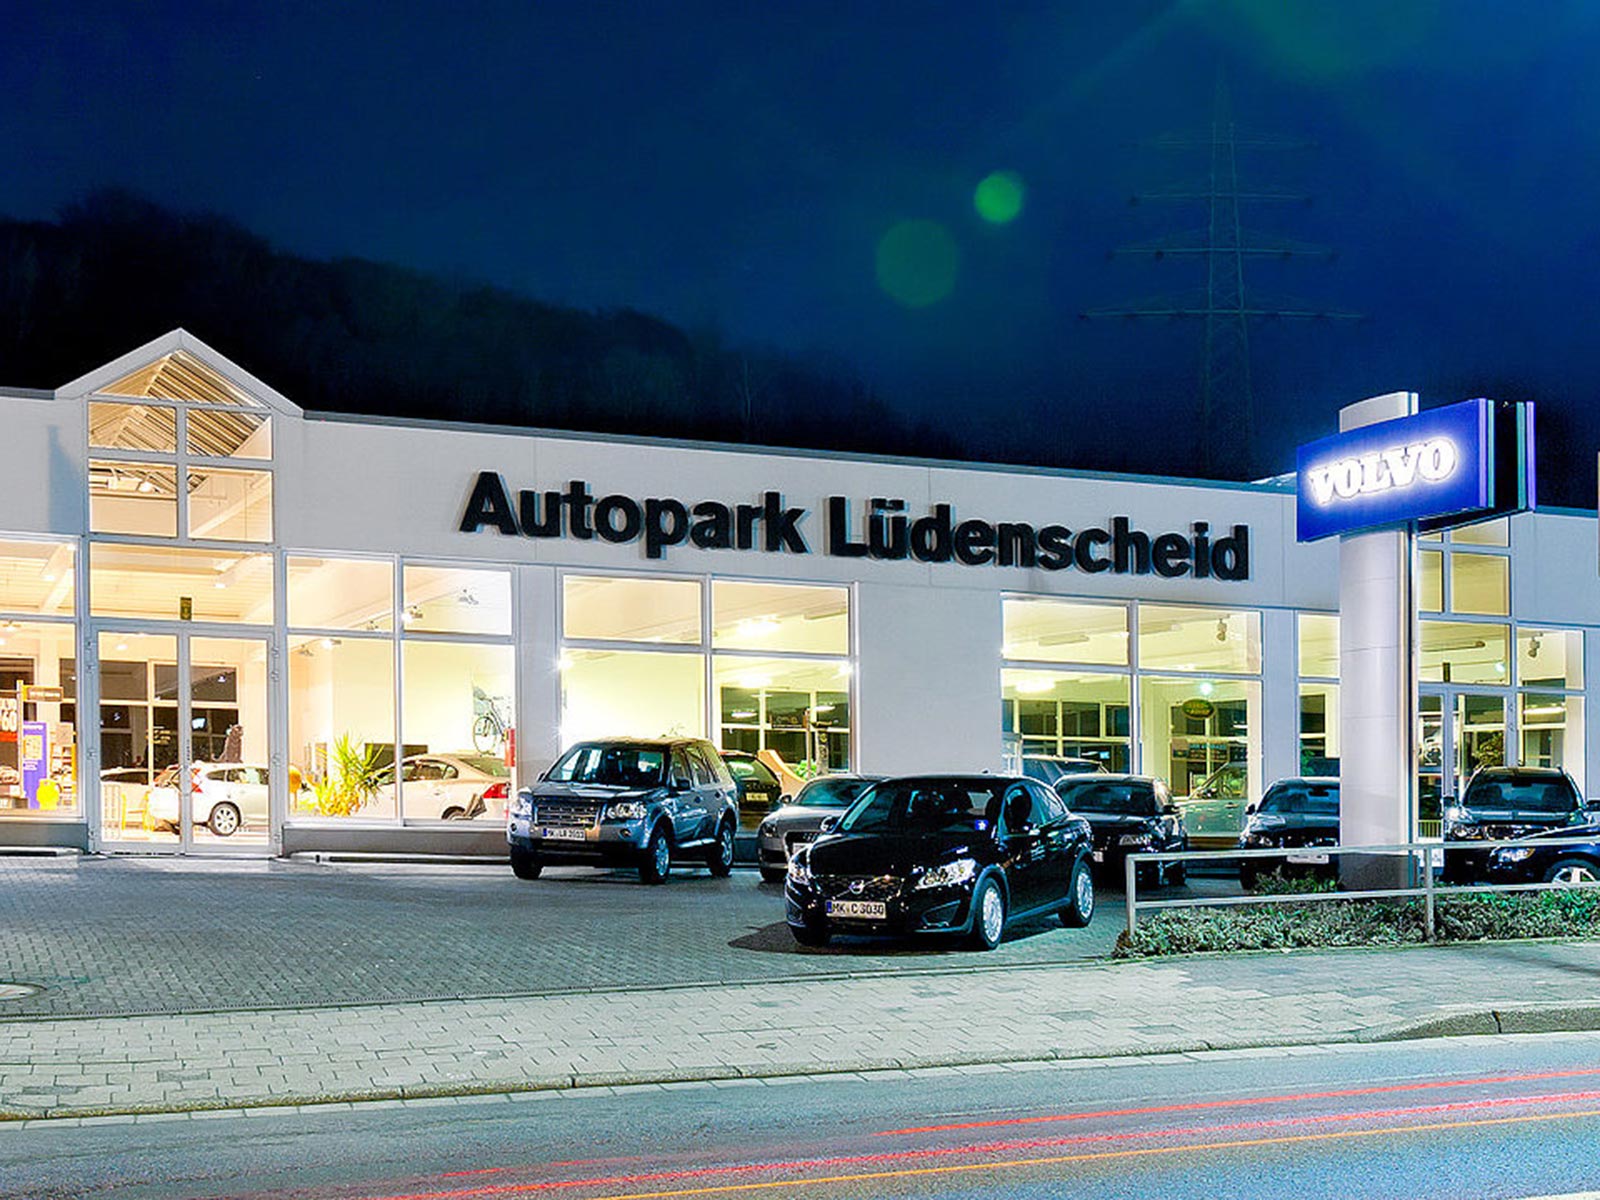 Außenansicht der MOBILITÄTSGRUPPE AMELUNG am Standort Lüdenscheid. Der Standort ist Händler für Volvo & Land Rover Fahrzeuge.